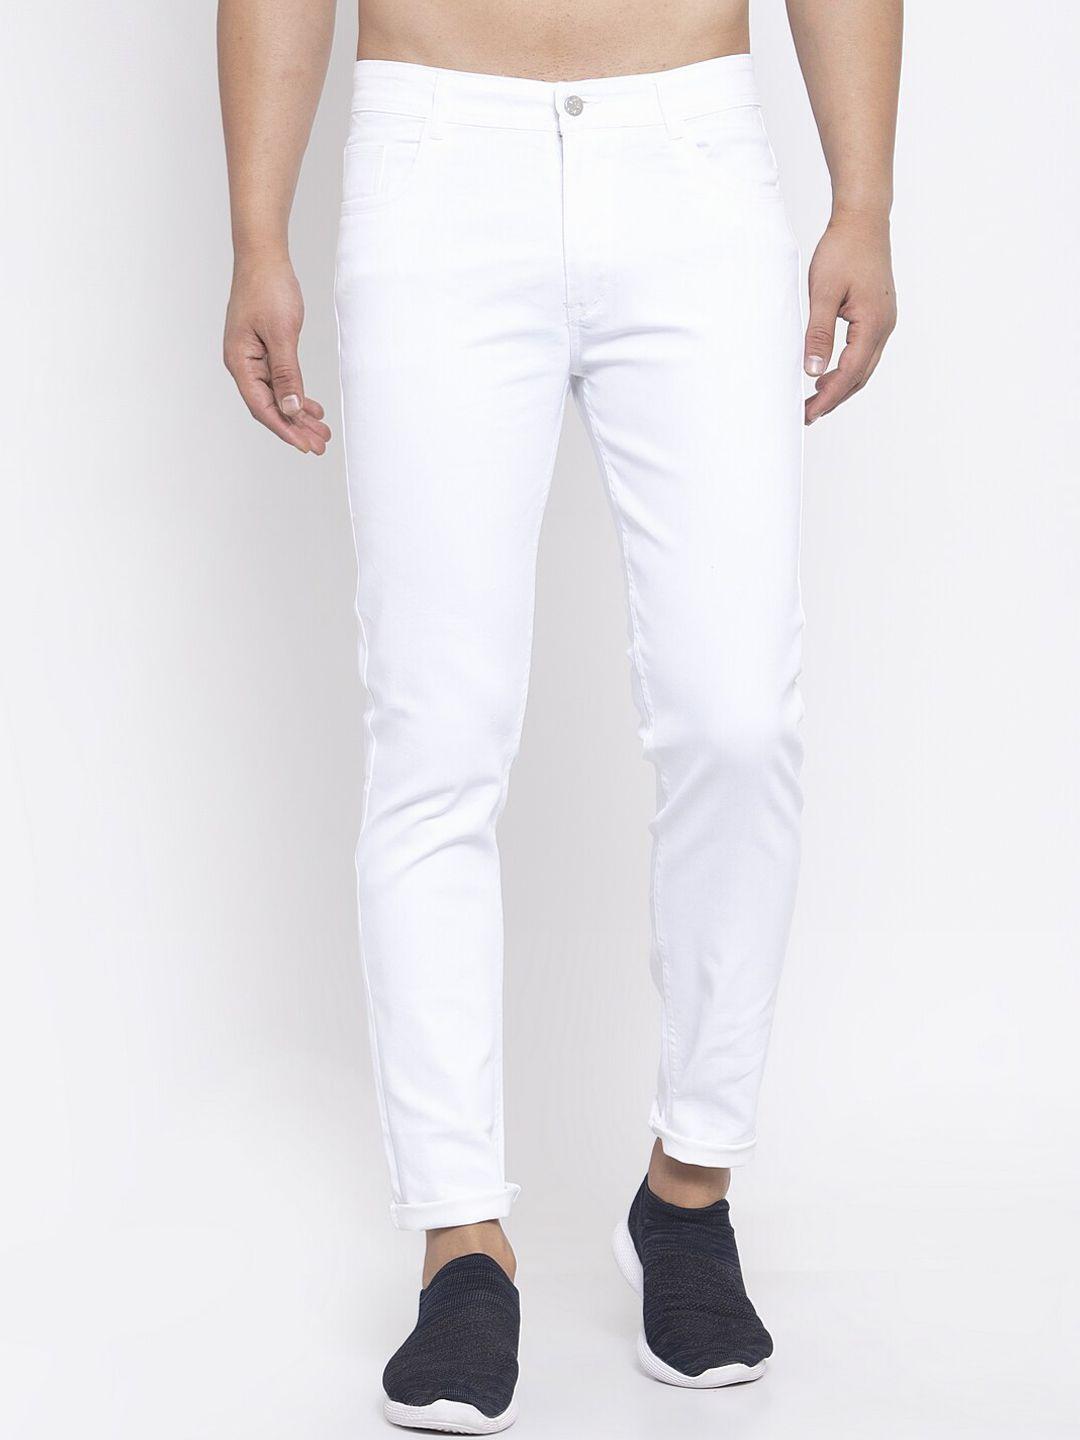 xee men white regular fit mid rise jeans